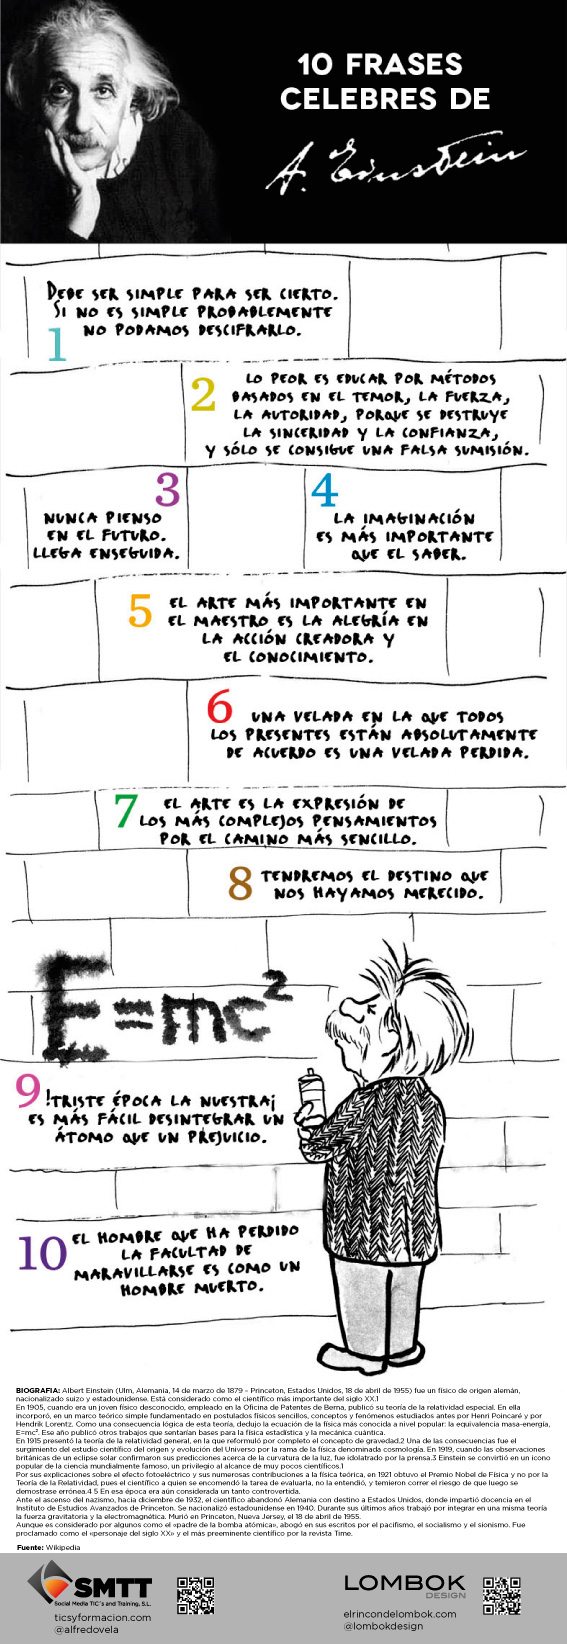 10 frases mas célebres de Einstein